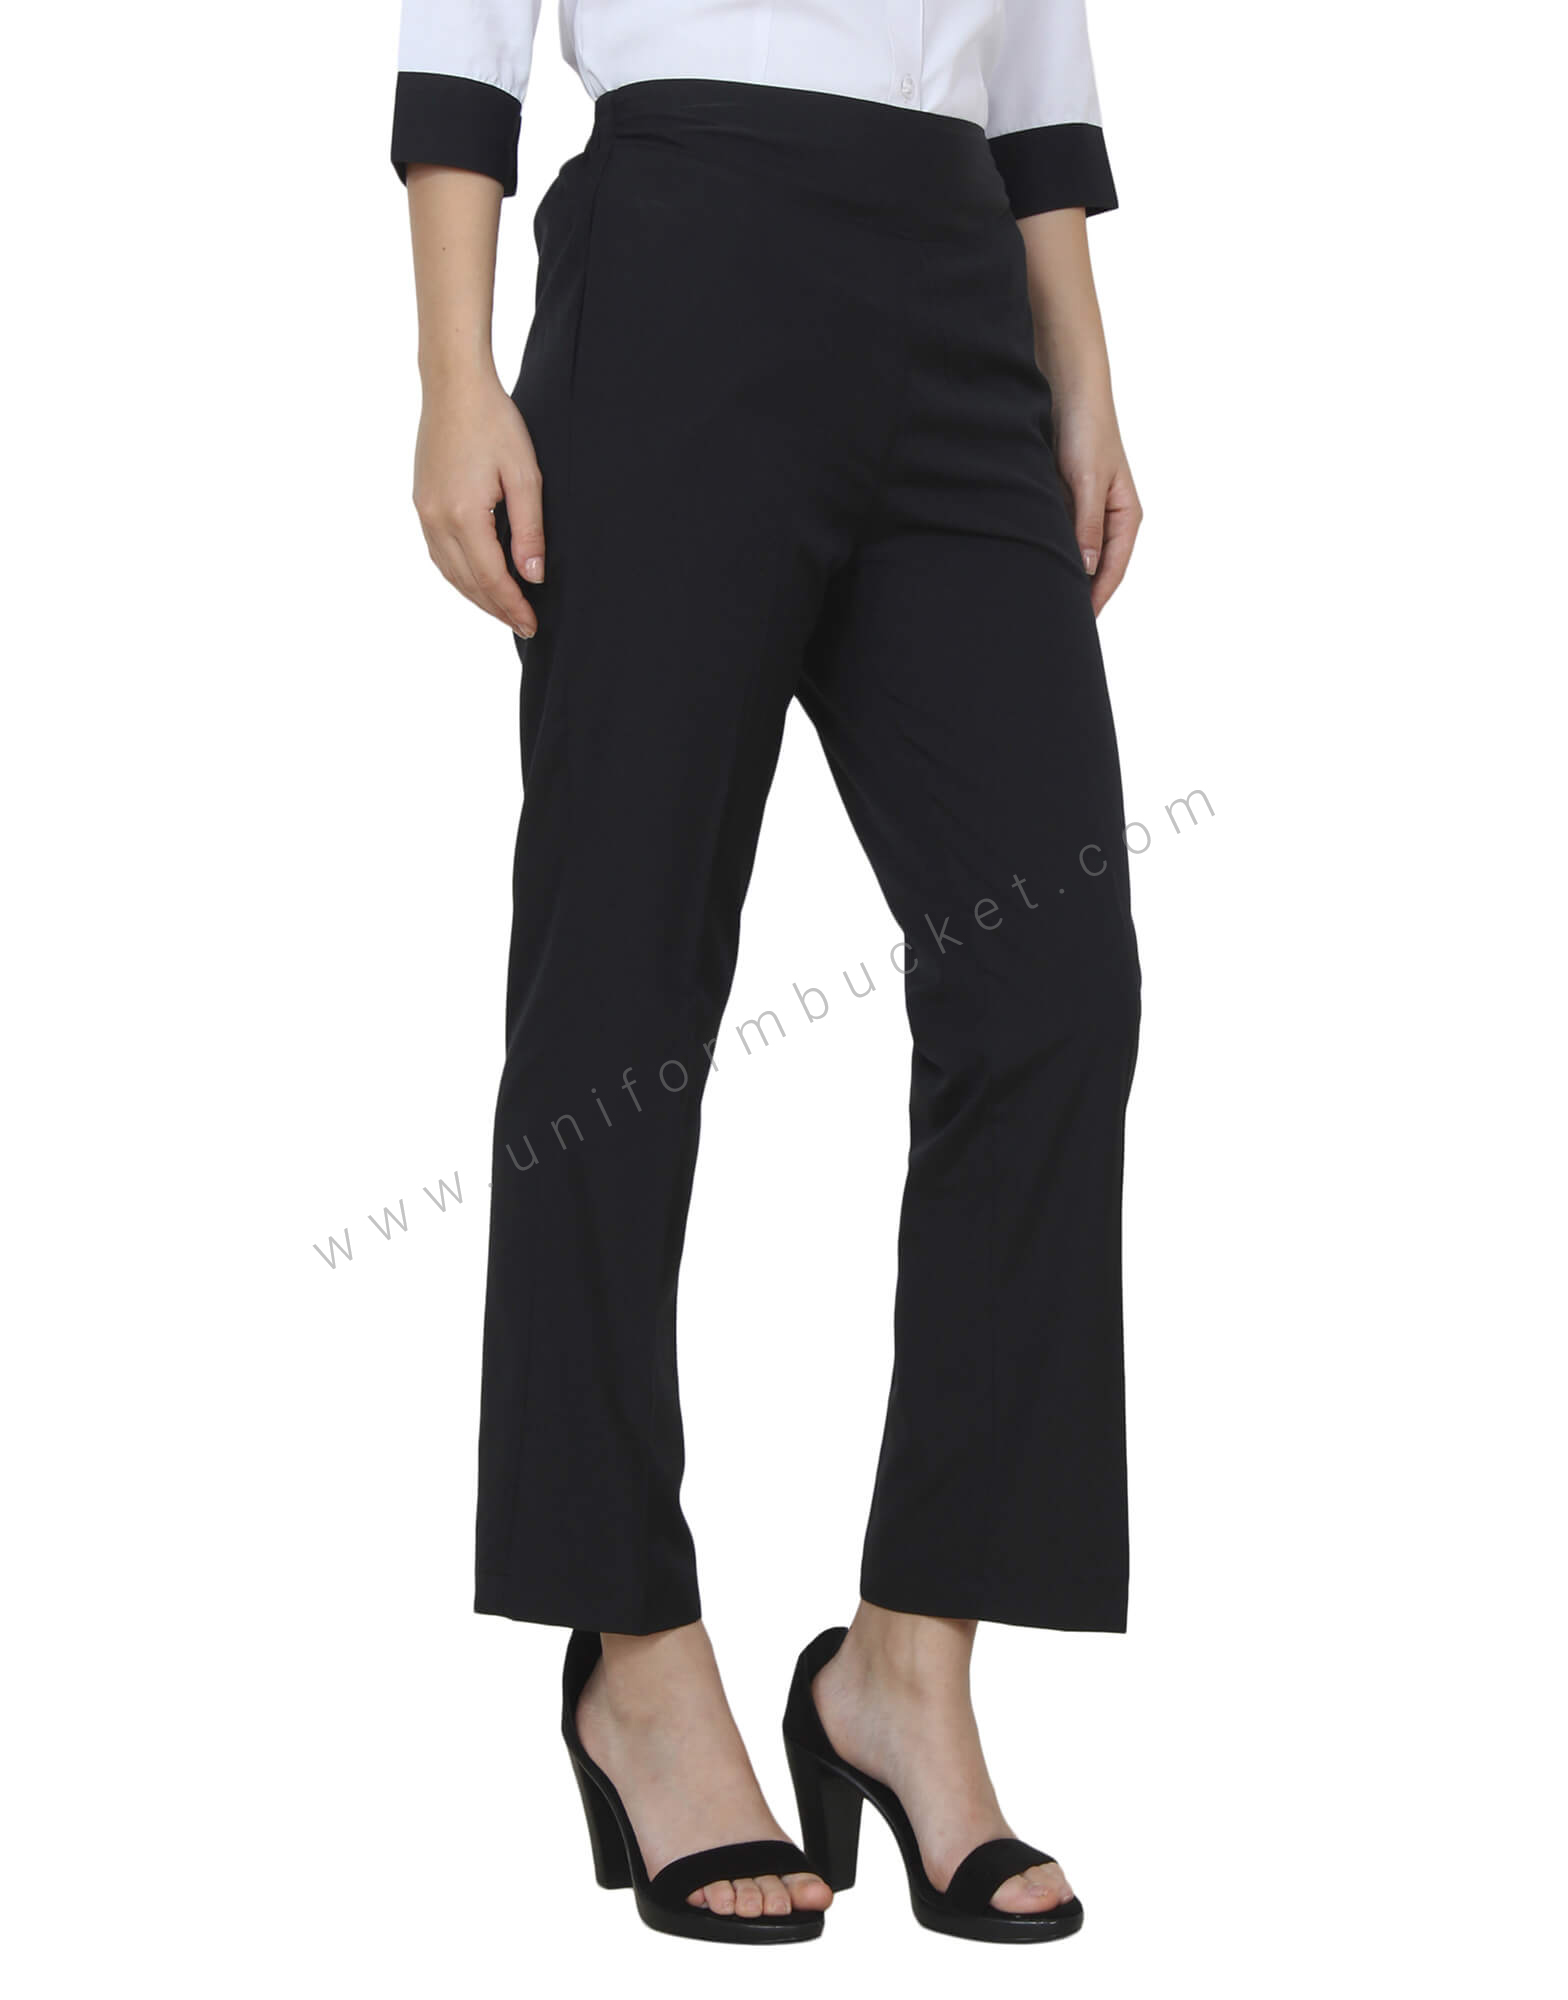 Buy Women Black Stripe Formal Slim Fit Trousers Online - 18968 | Van Heusen-hangkhonggiare.com.vn